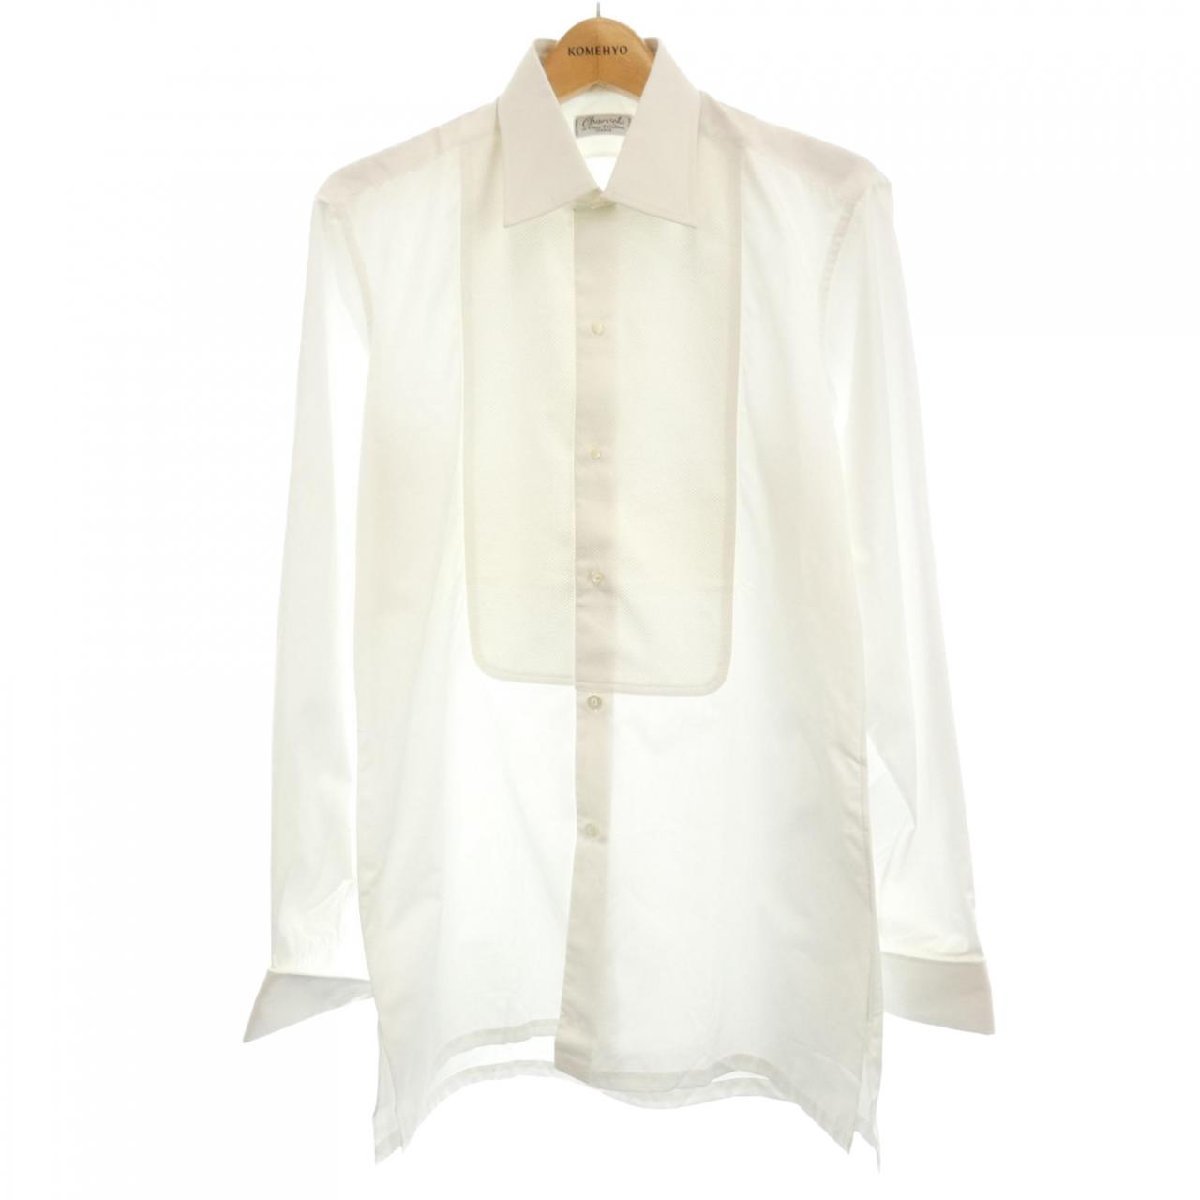 最上の品質な Kapital キャピタル 無地 ホワイト 白 3 長袖シャツ